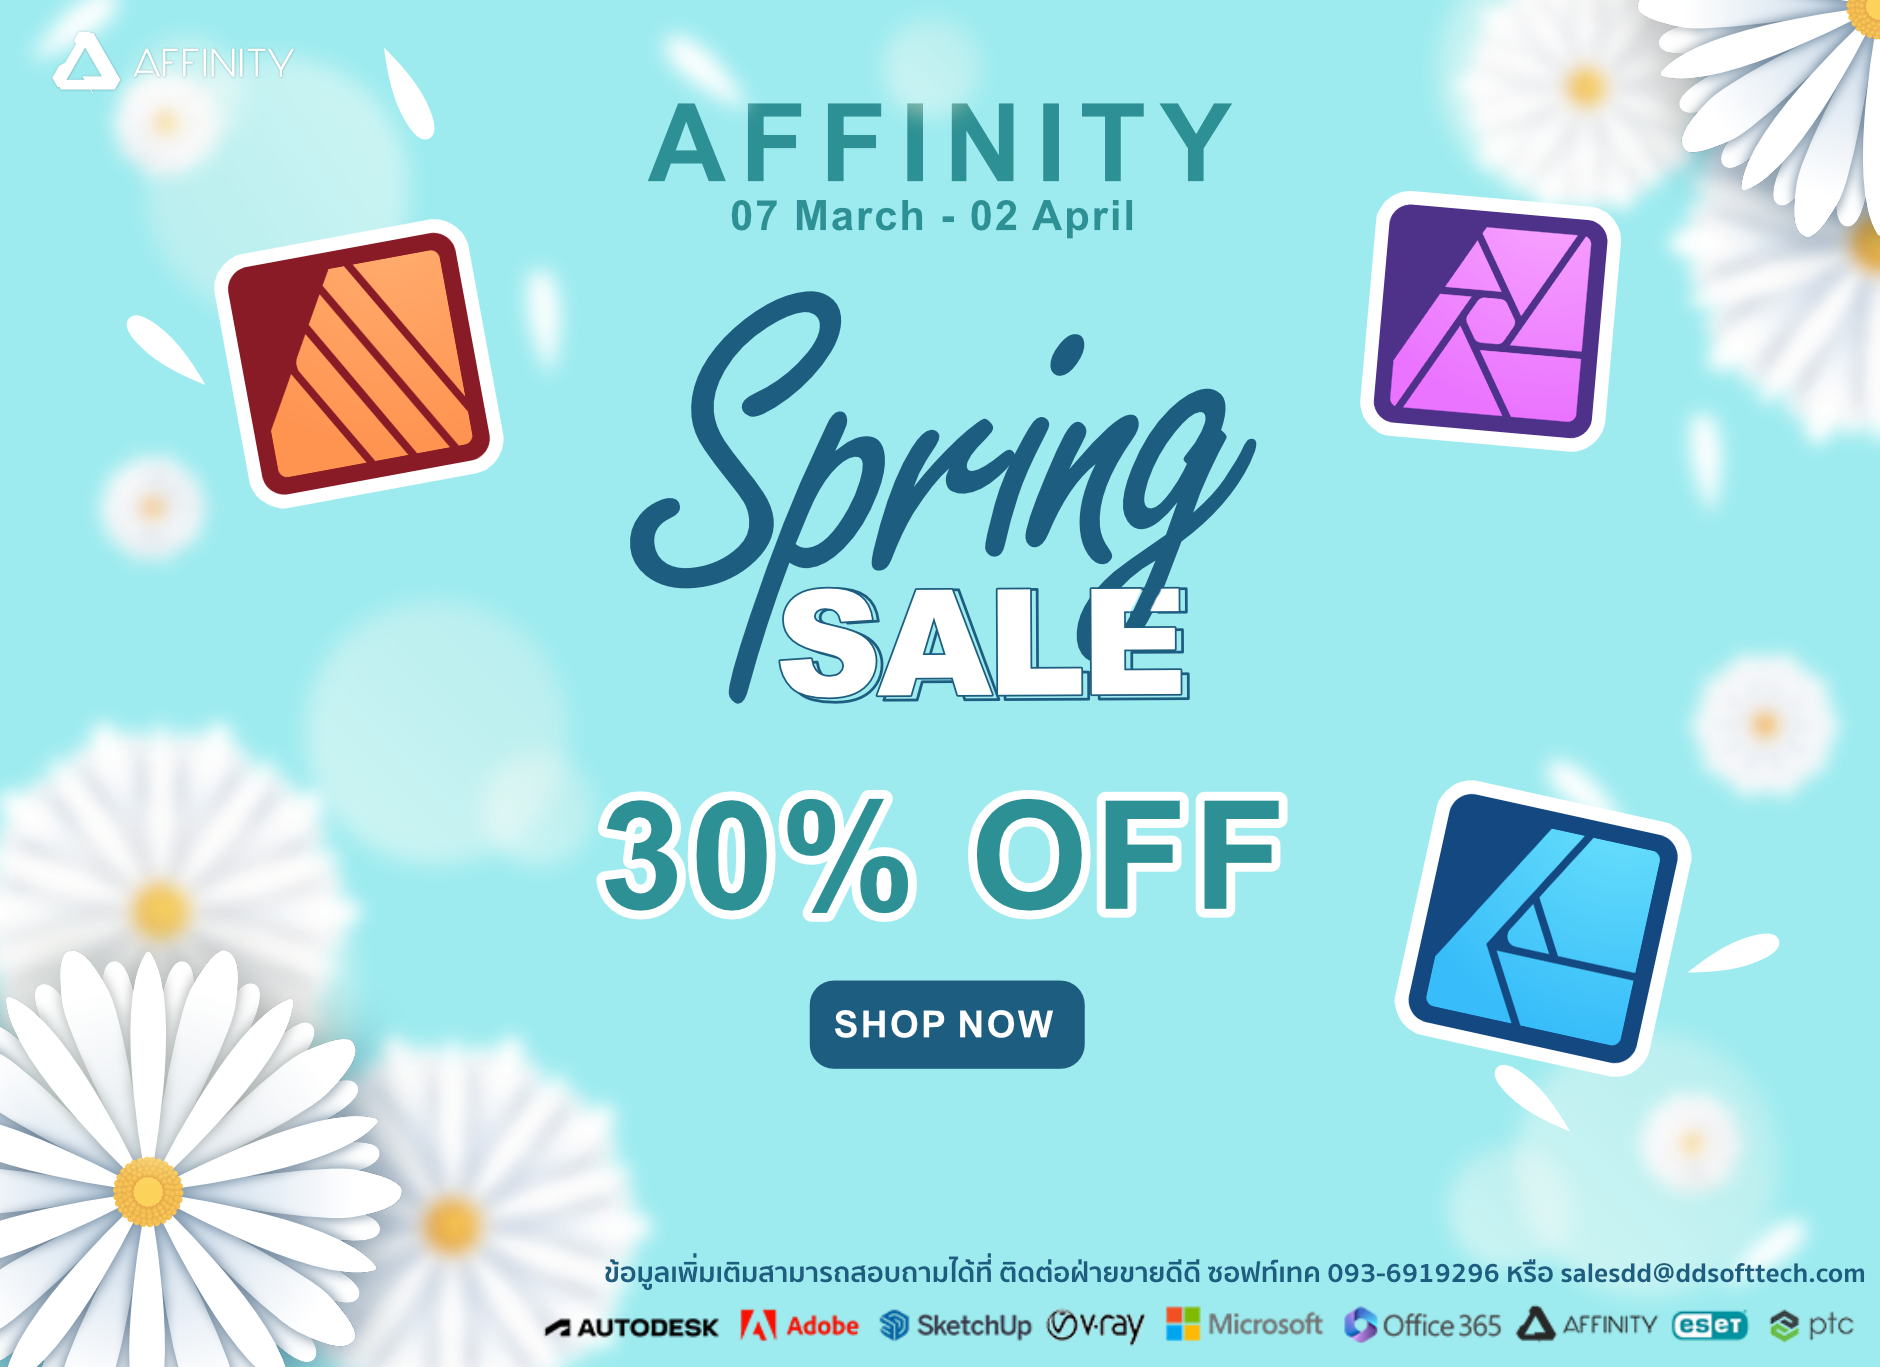  Affinity Spring Promotion ลด 30%   โปรโมชั่นลดราคาถึง 30% เฉพาะระหว่างวันที่ 07 มีนาคม 2567 ถึง 02 เมษายน 2567 เท่านั้น